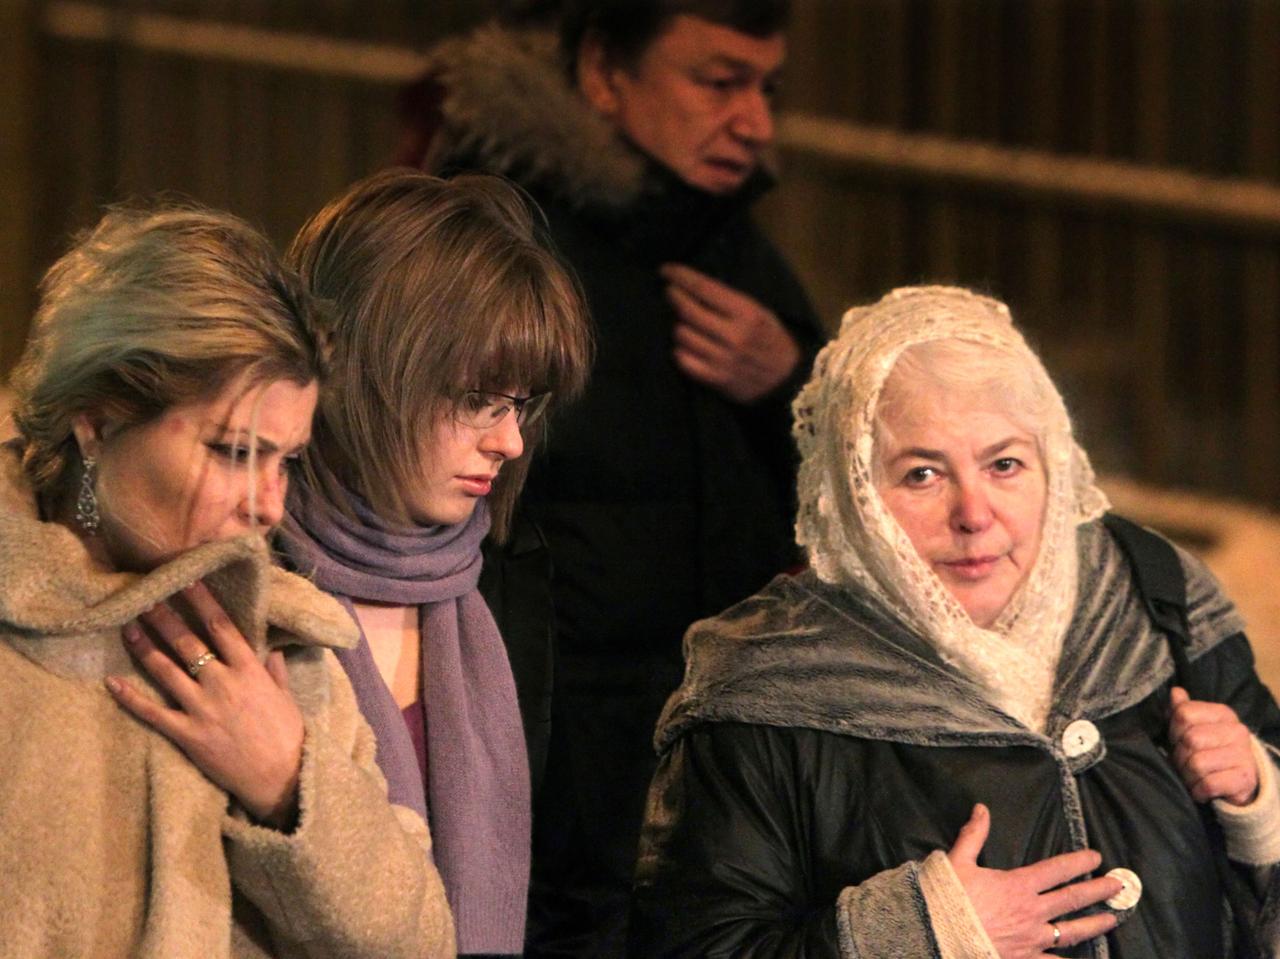 Chodorkowskis Familie (v.l.n.r.): Seine Ehefrau Inna, seine Tochter Anastasia und seine Mutter Marina Chodorkowskaja nach der Gerichtsverhandlung in Moskau am 30.12.2010.